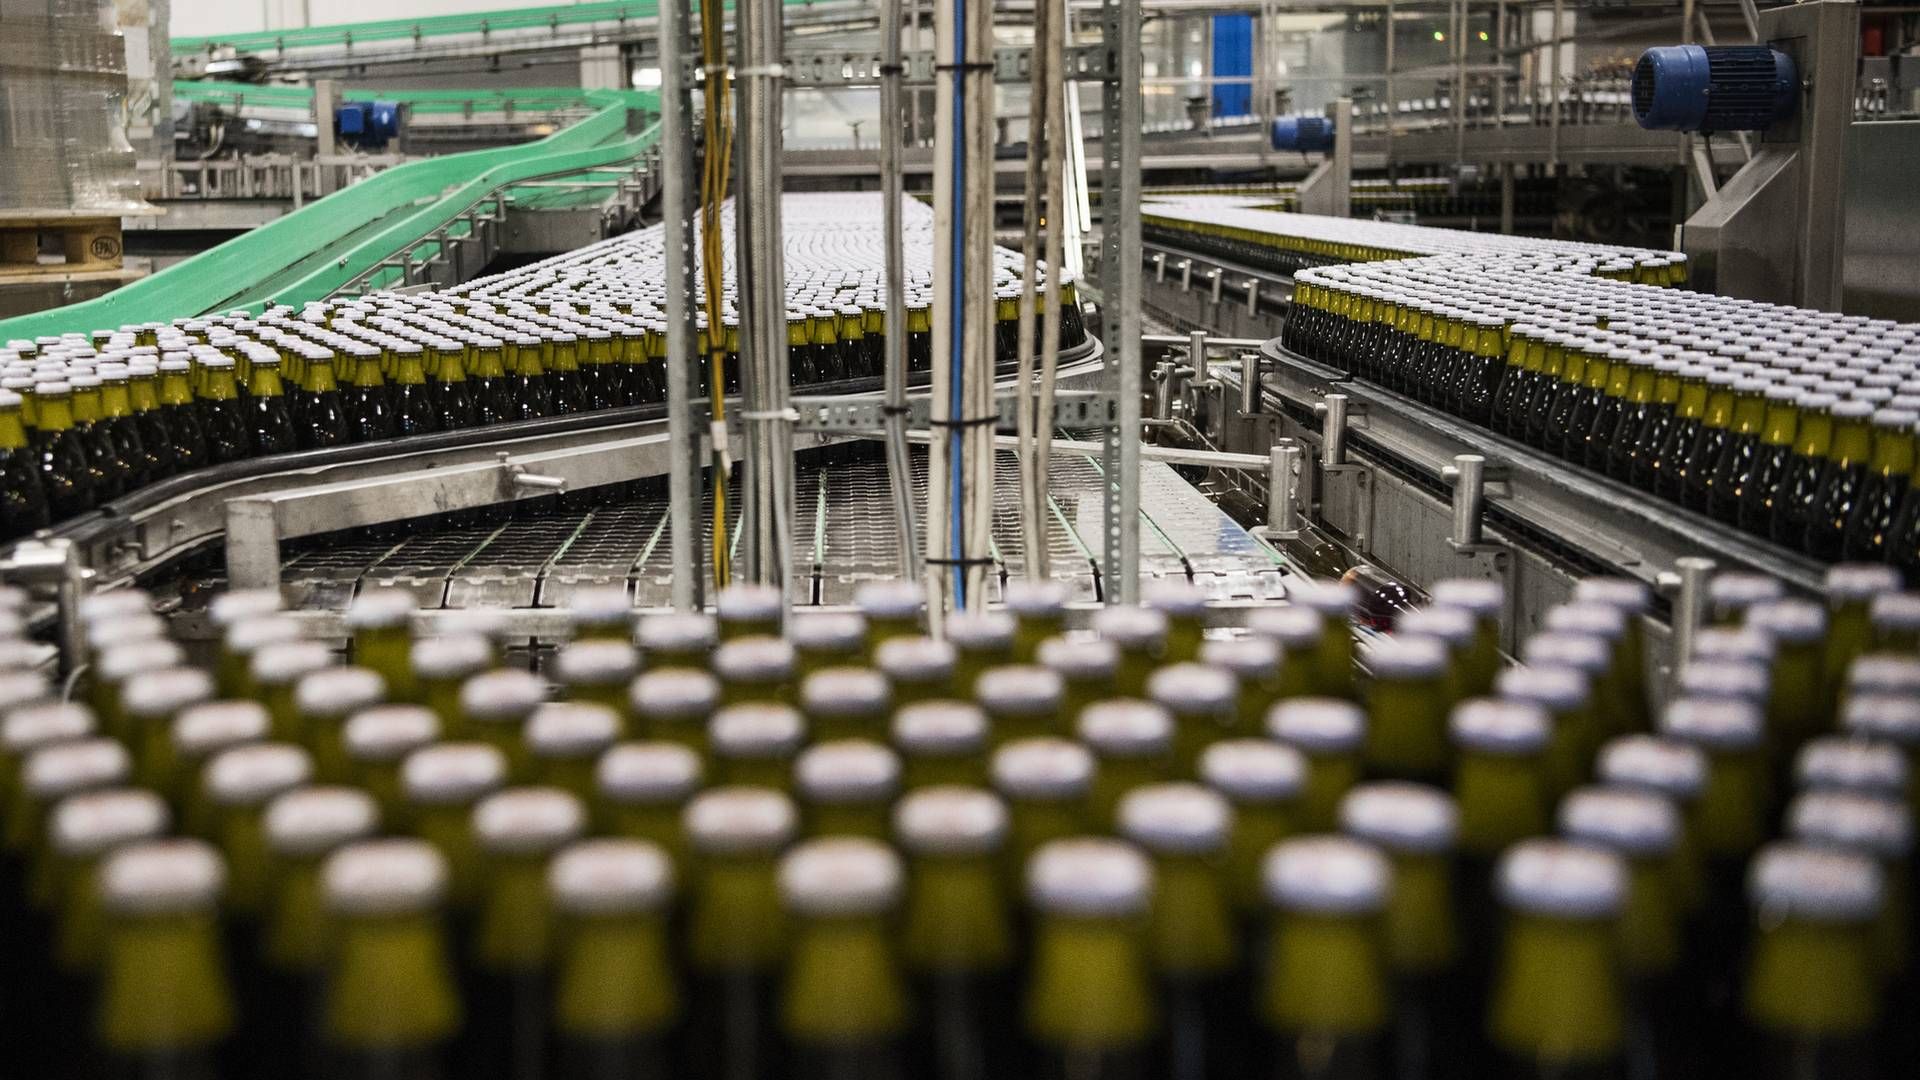 Bryggerier famler i mens salget af øl — FødevareWatch